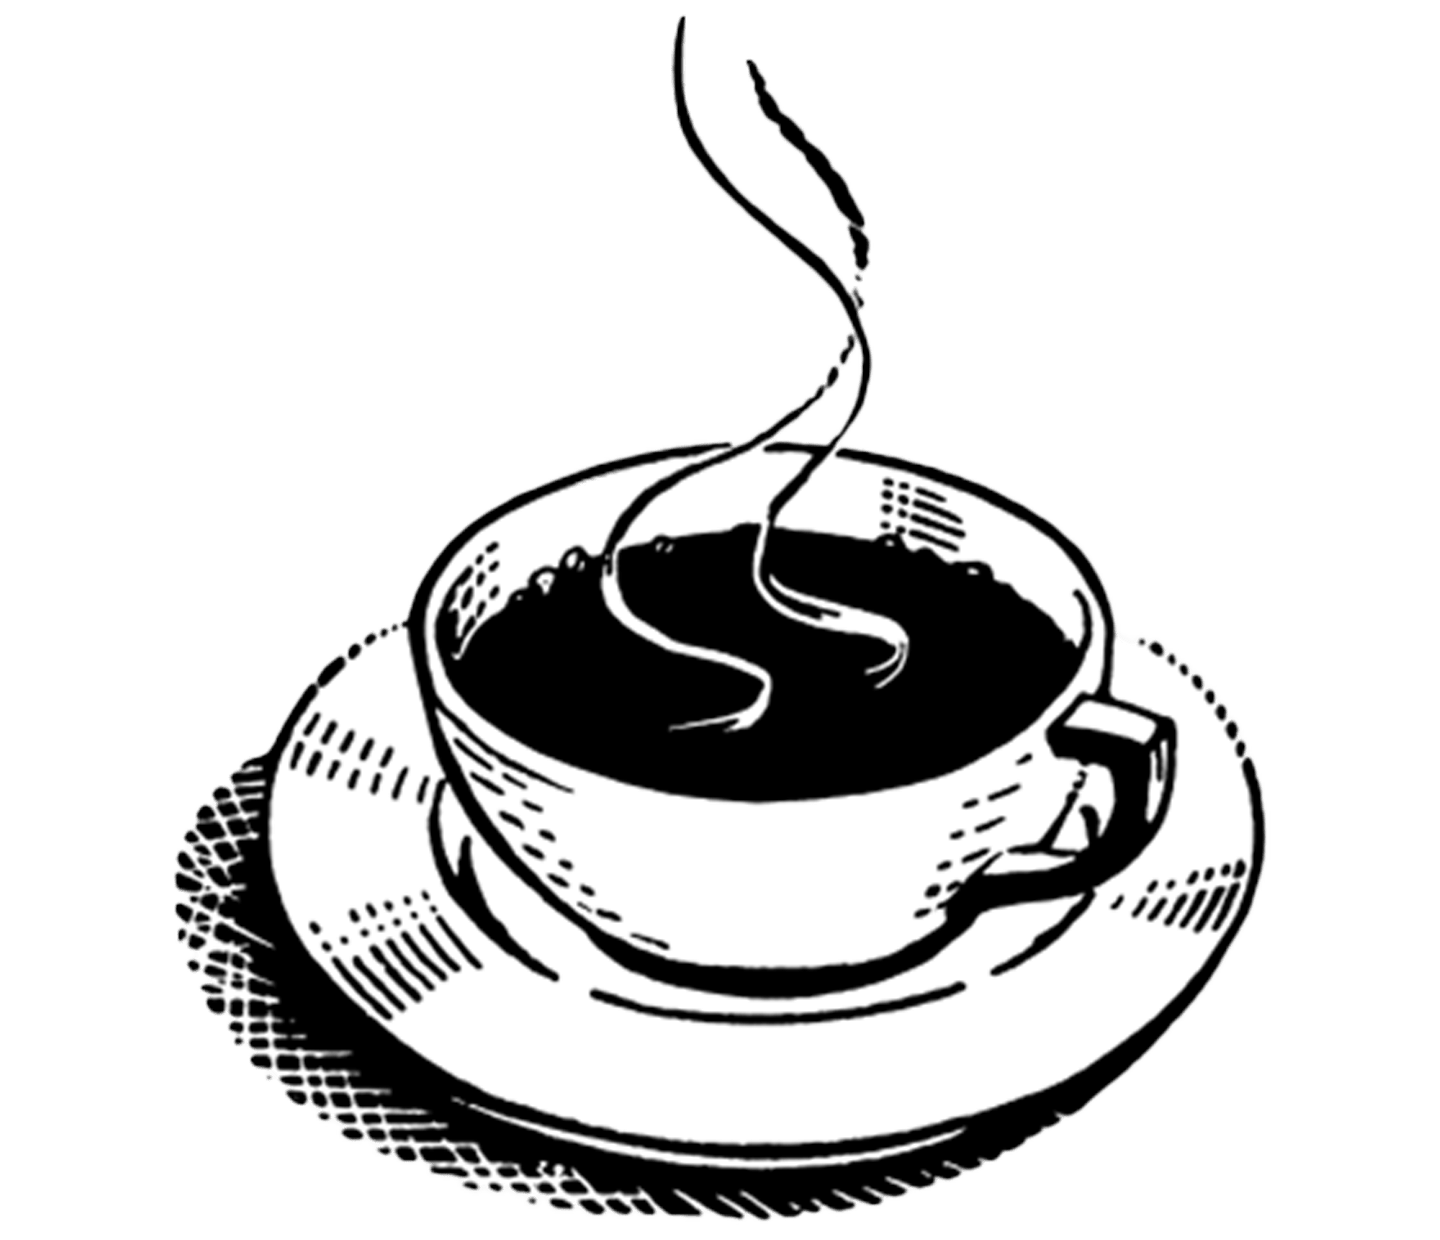 Historia del café